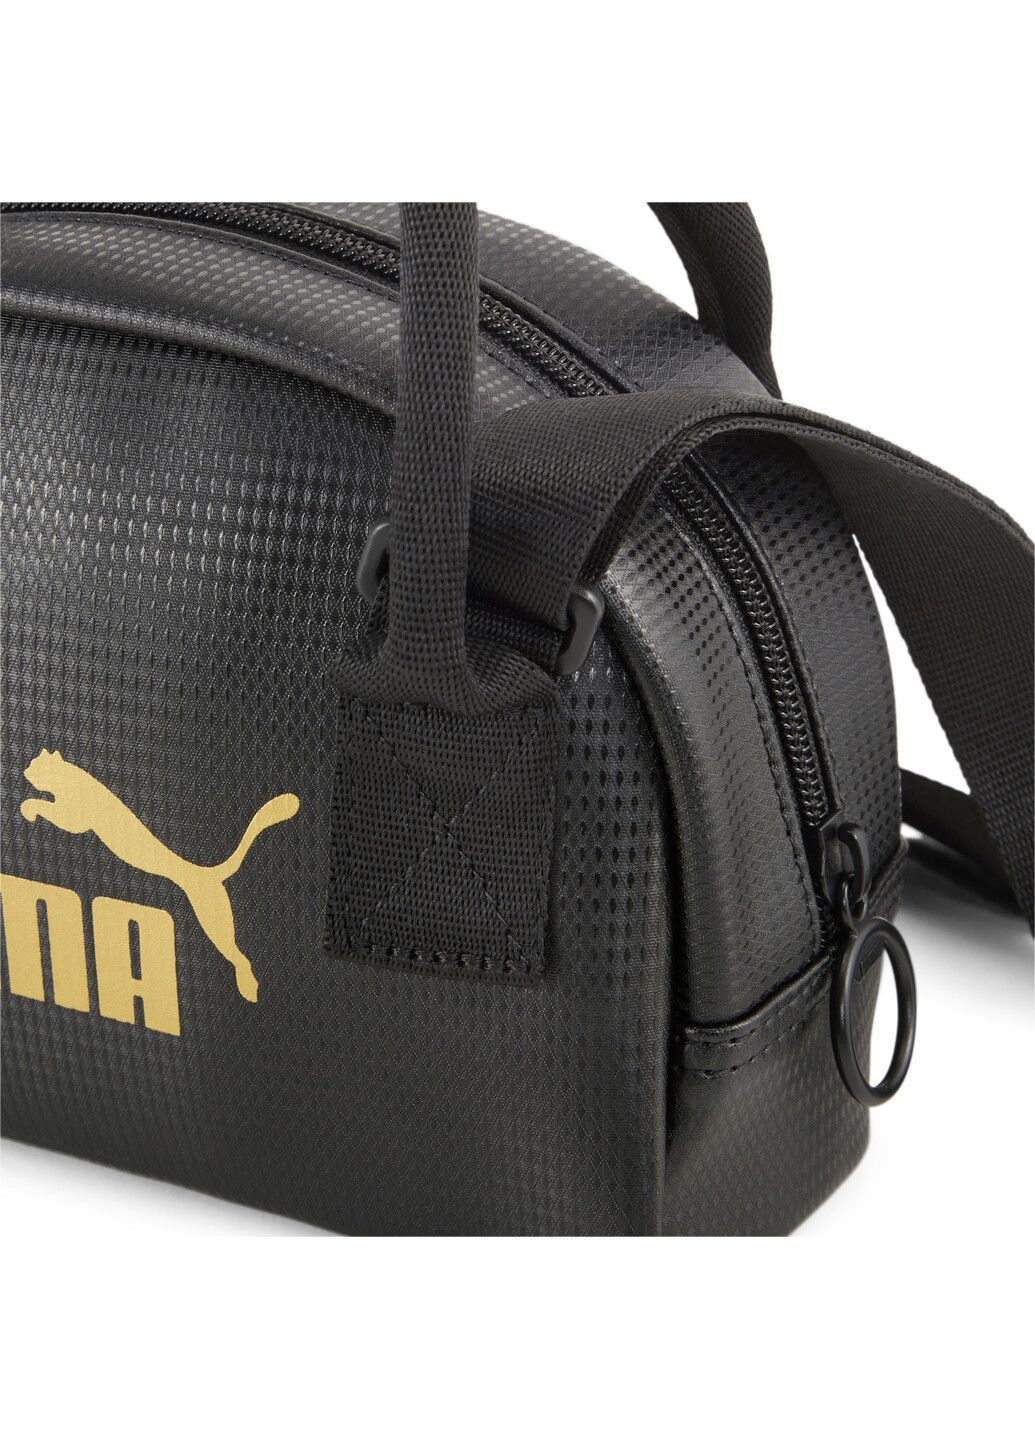 Сумка Core Up Mini Carry Bag (1,5 литра) Puma (282838276)